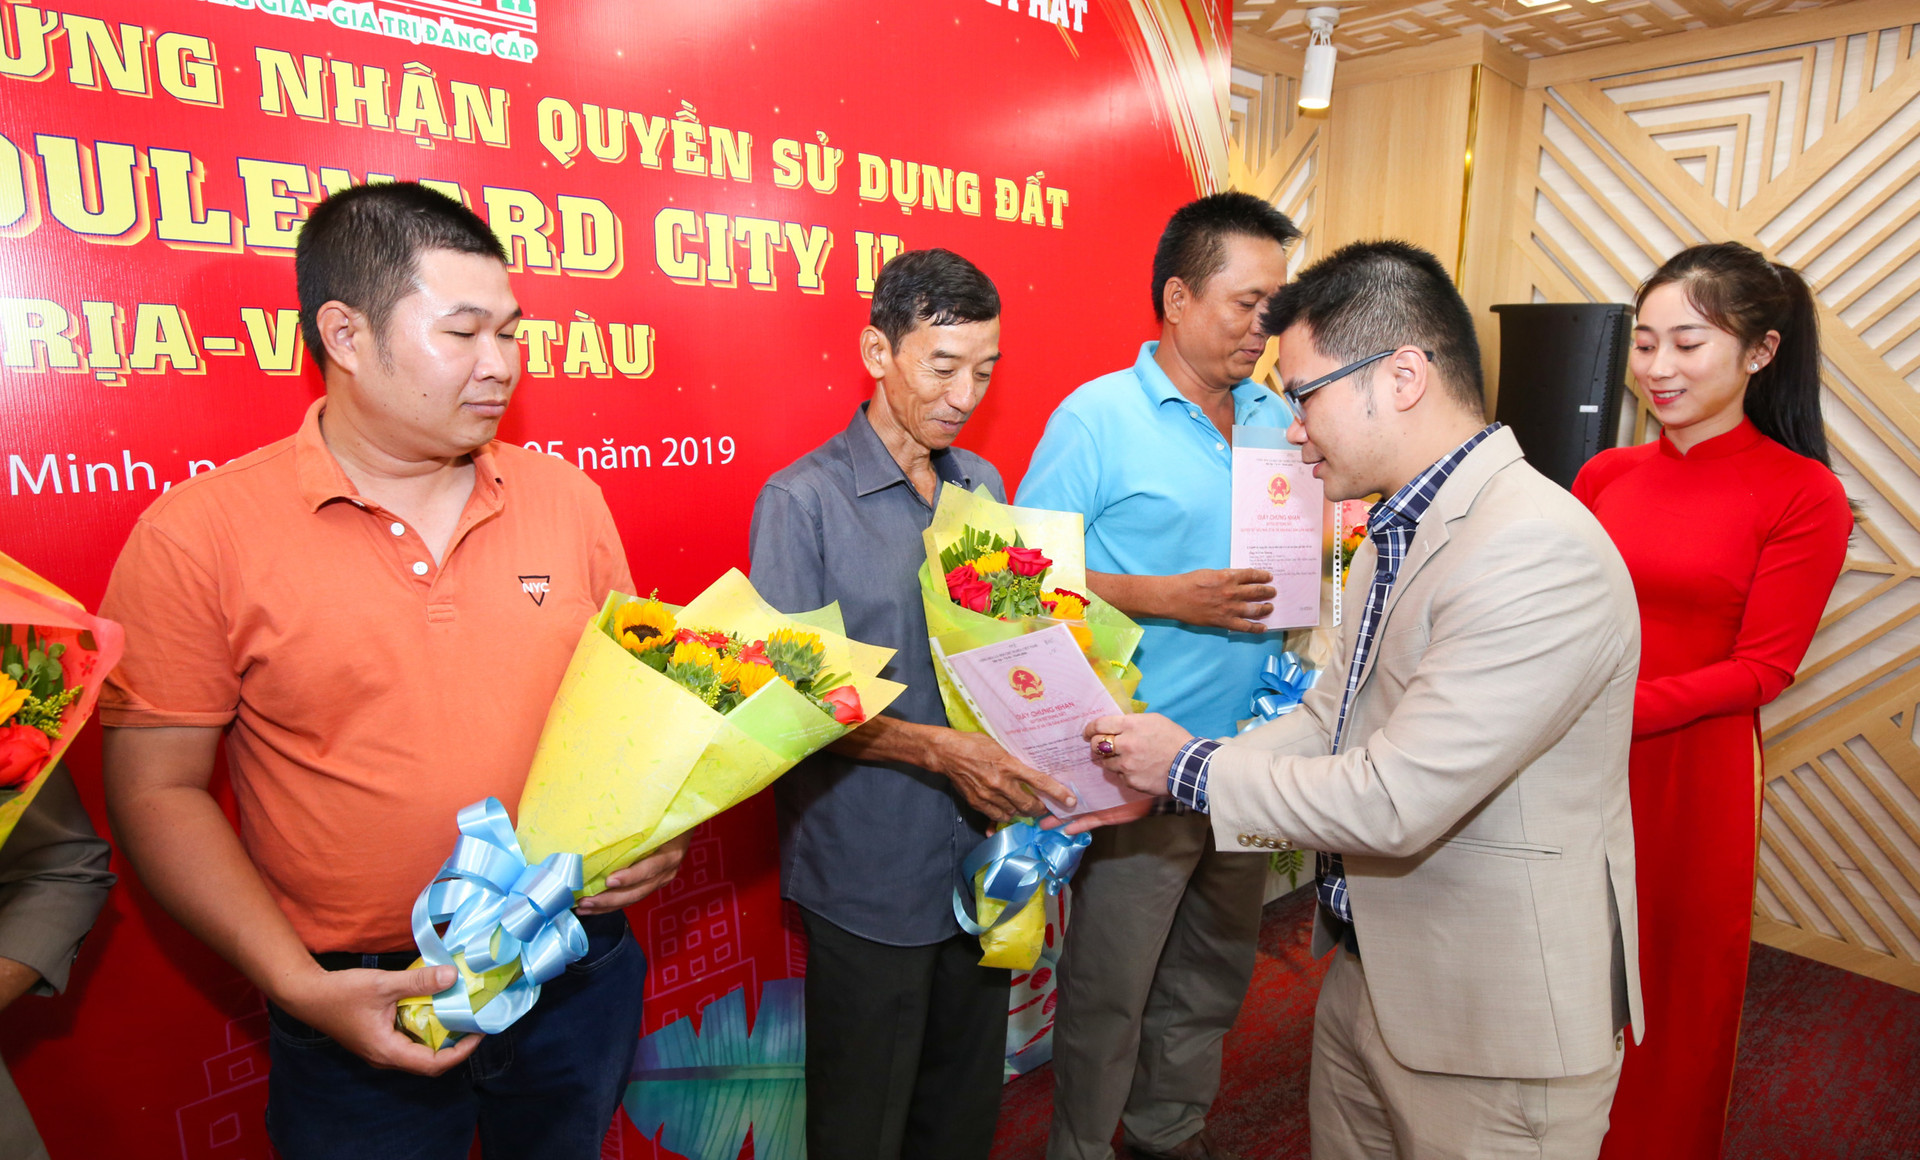 Việt Hưng Phát trao hàng trăm sổ hồng cho khách hàng tại Boulevard City Bà Rịa – Vũng Tàu